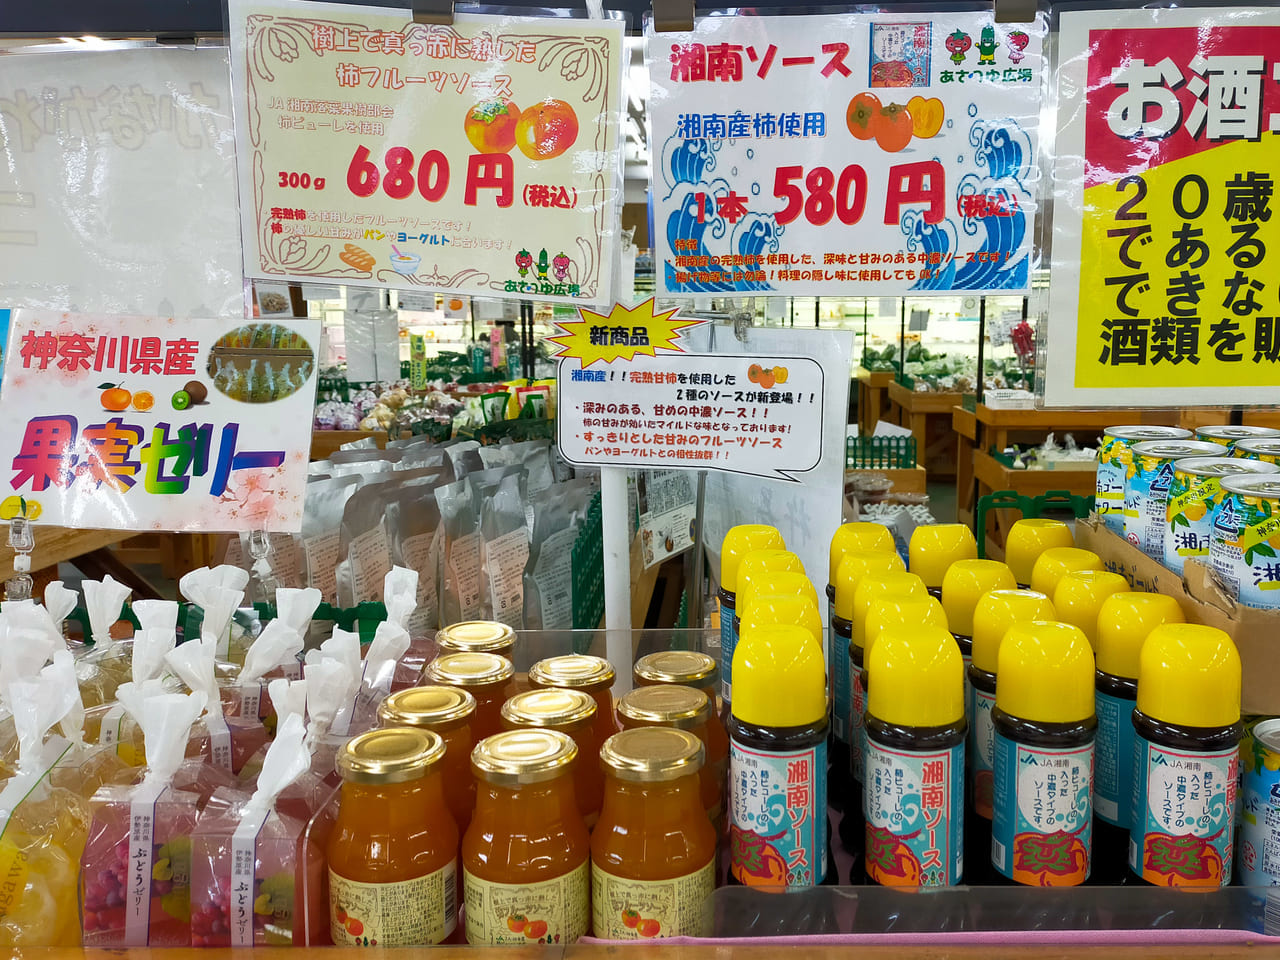 新商品！湘南で採れた柿を使用した2種類のソースがあさつゆ広場で販売されています！